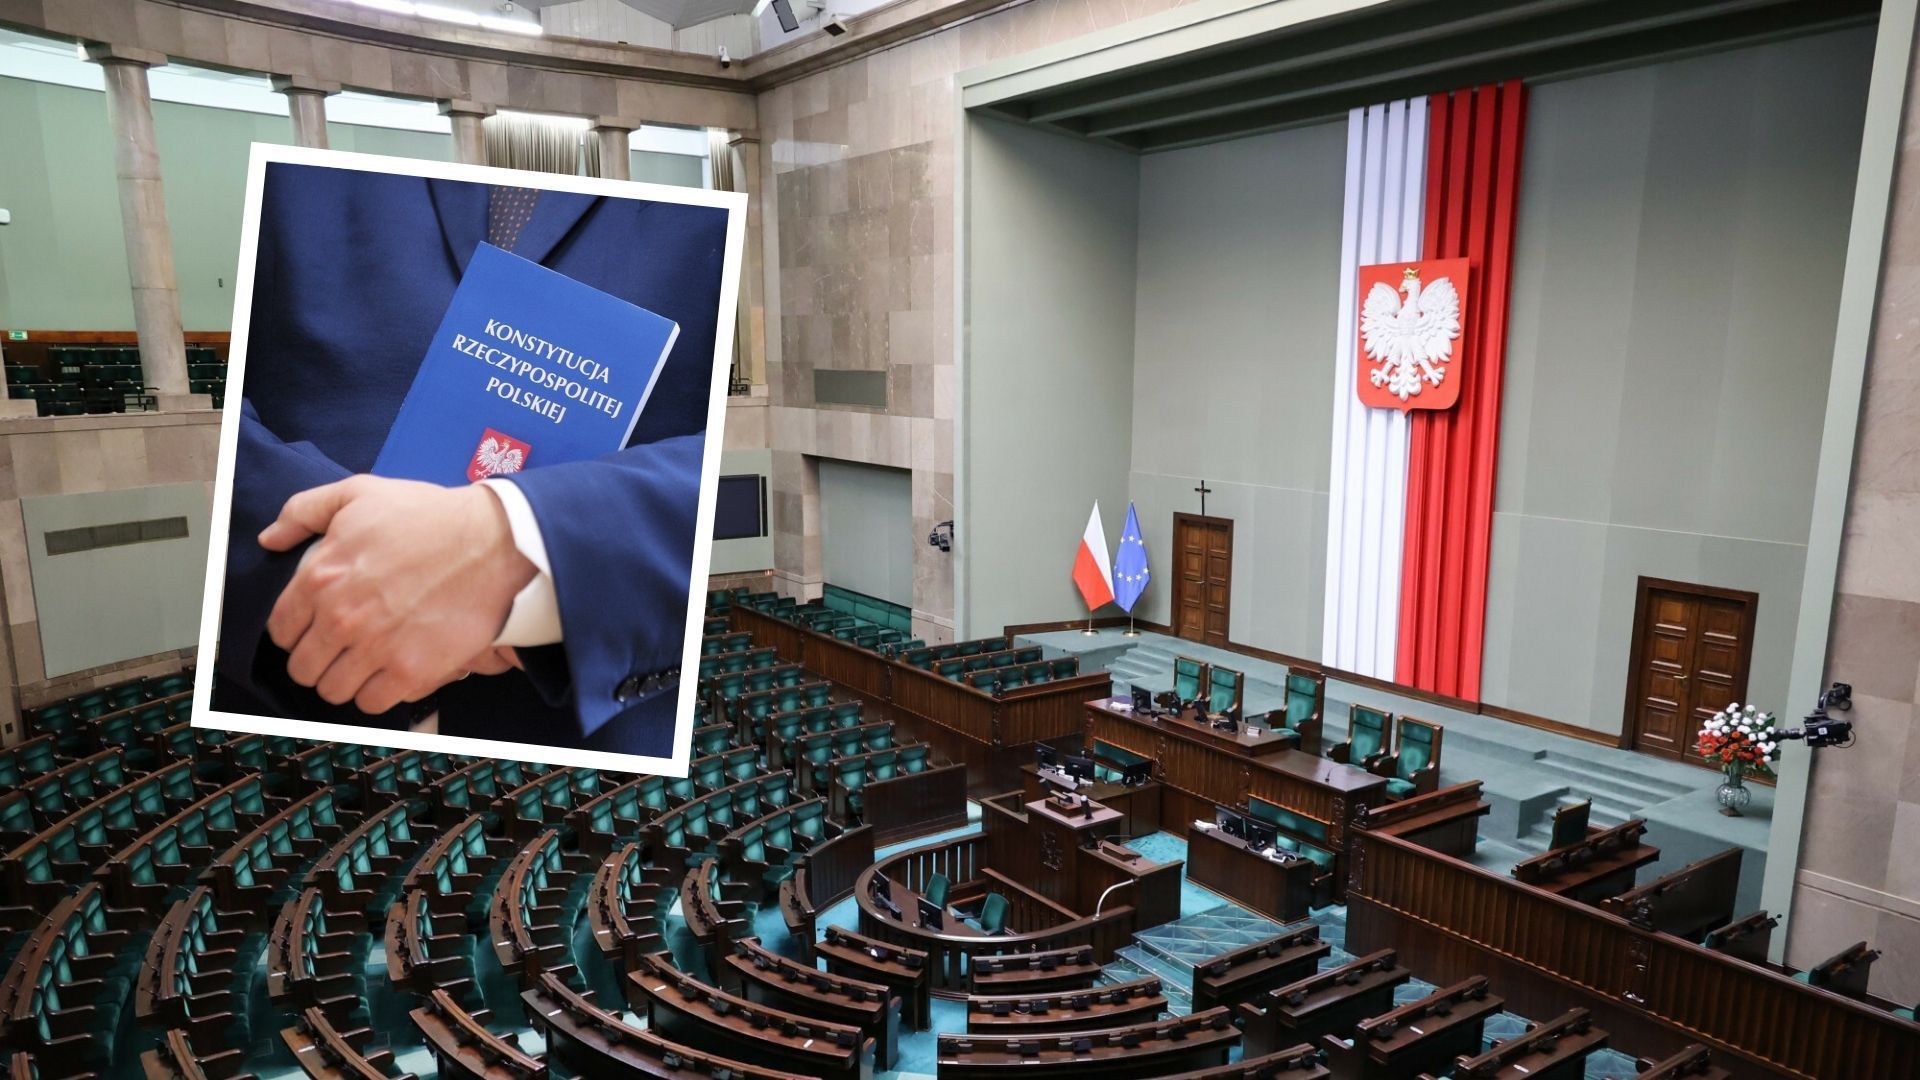 Posłowie PiS chcą zmiany Konstytucji, do Sejmu wpłynął projekt jej zmiany